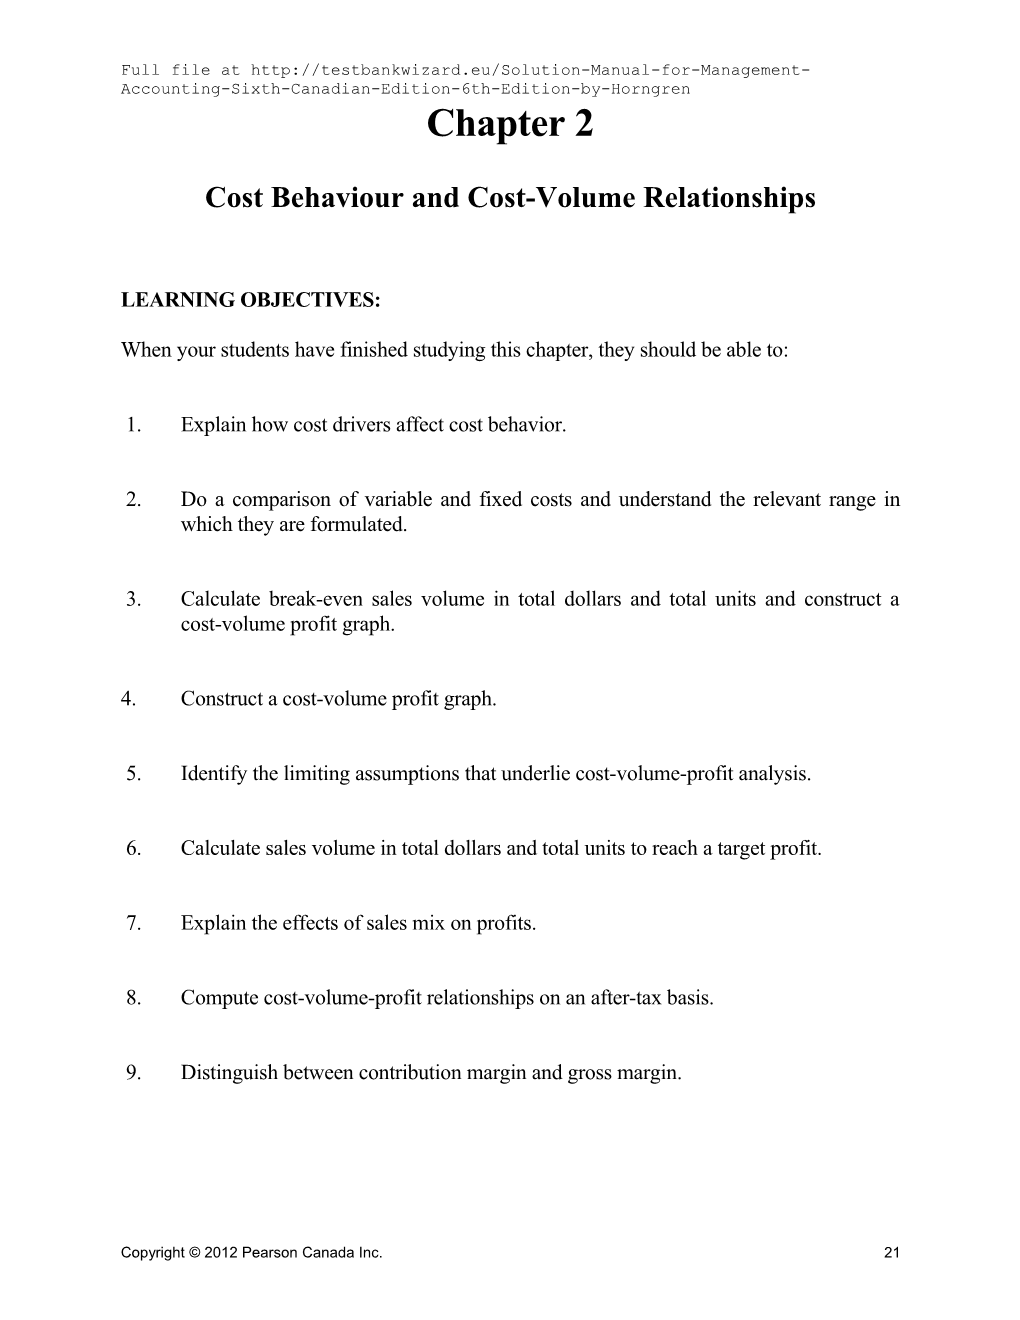 Cost Behaviourand Cost-Volume Relationships